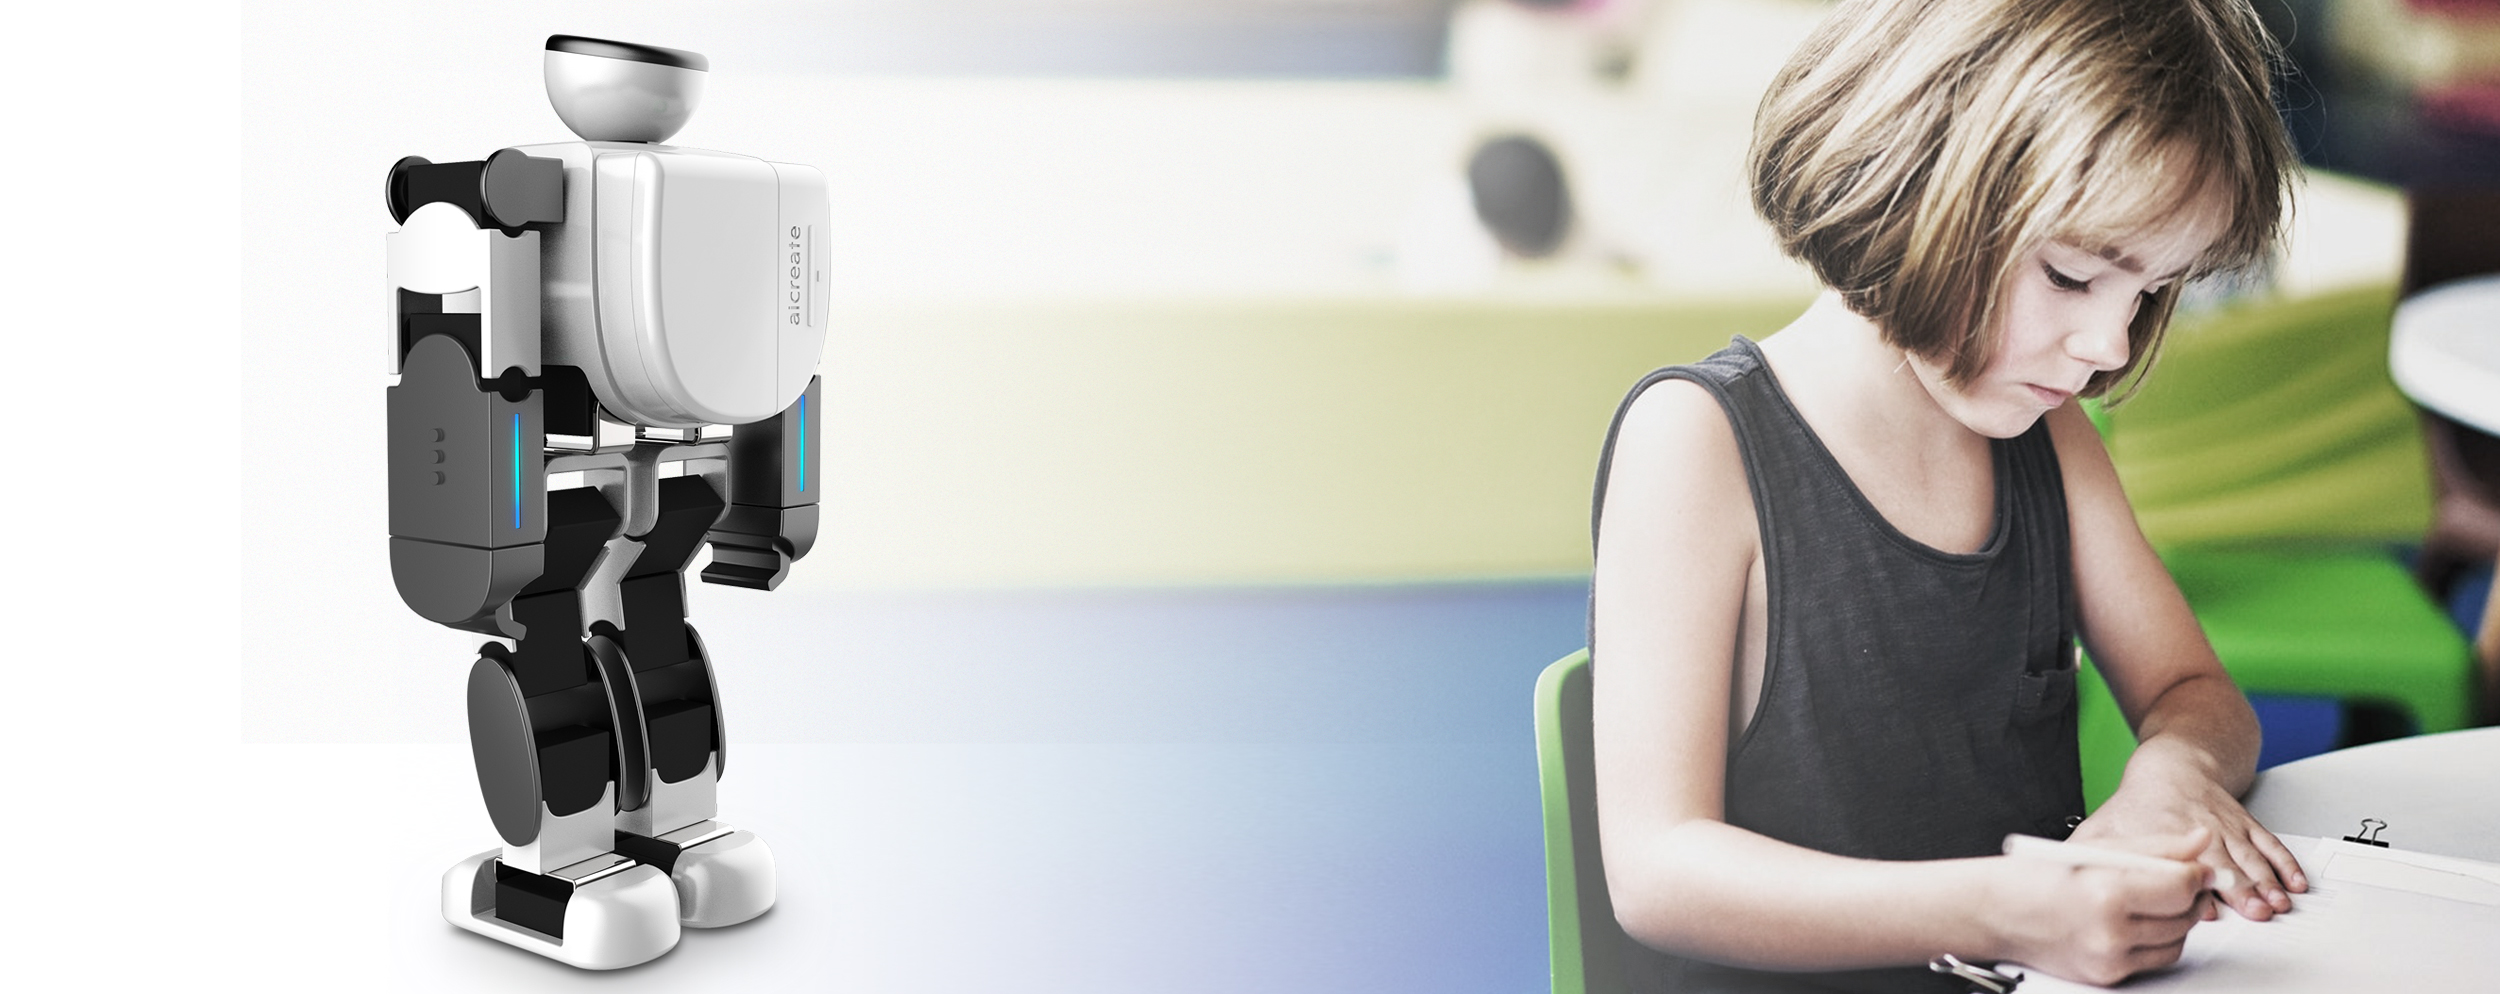 厂家批发 9寸wifi语音陪伴对话教育学习玩具早教智能机器人-阿里巴巴